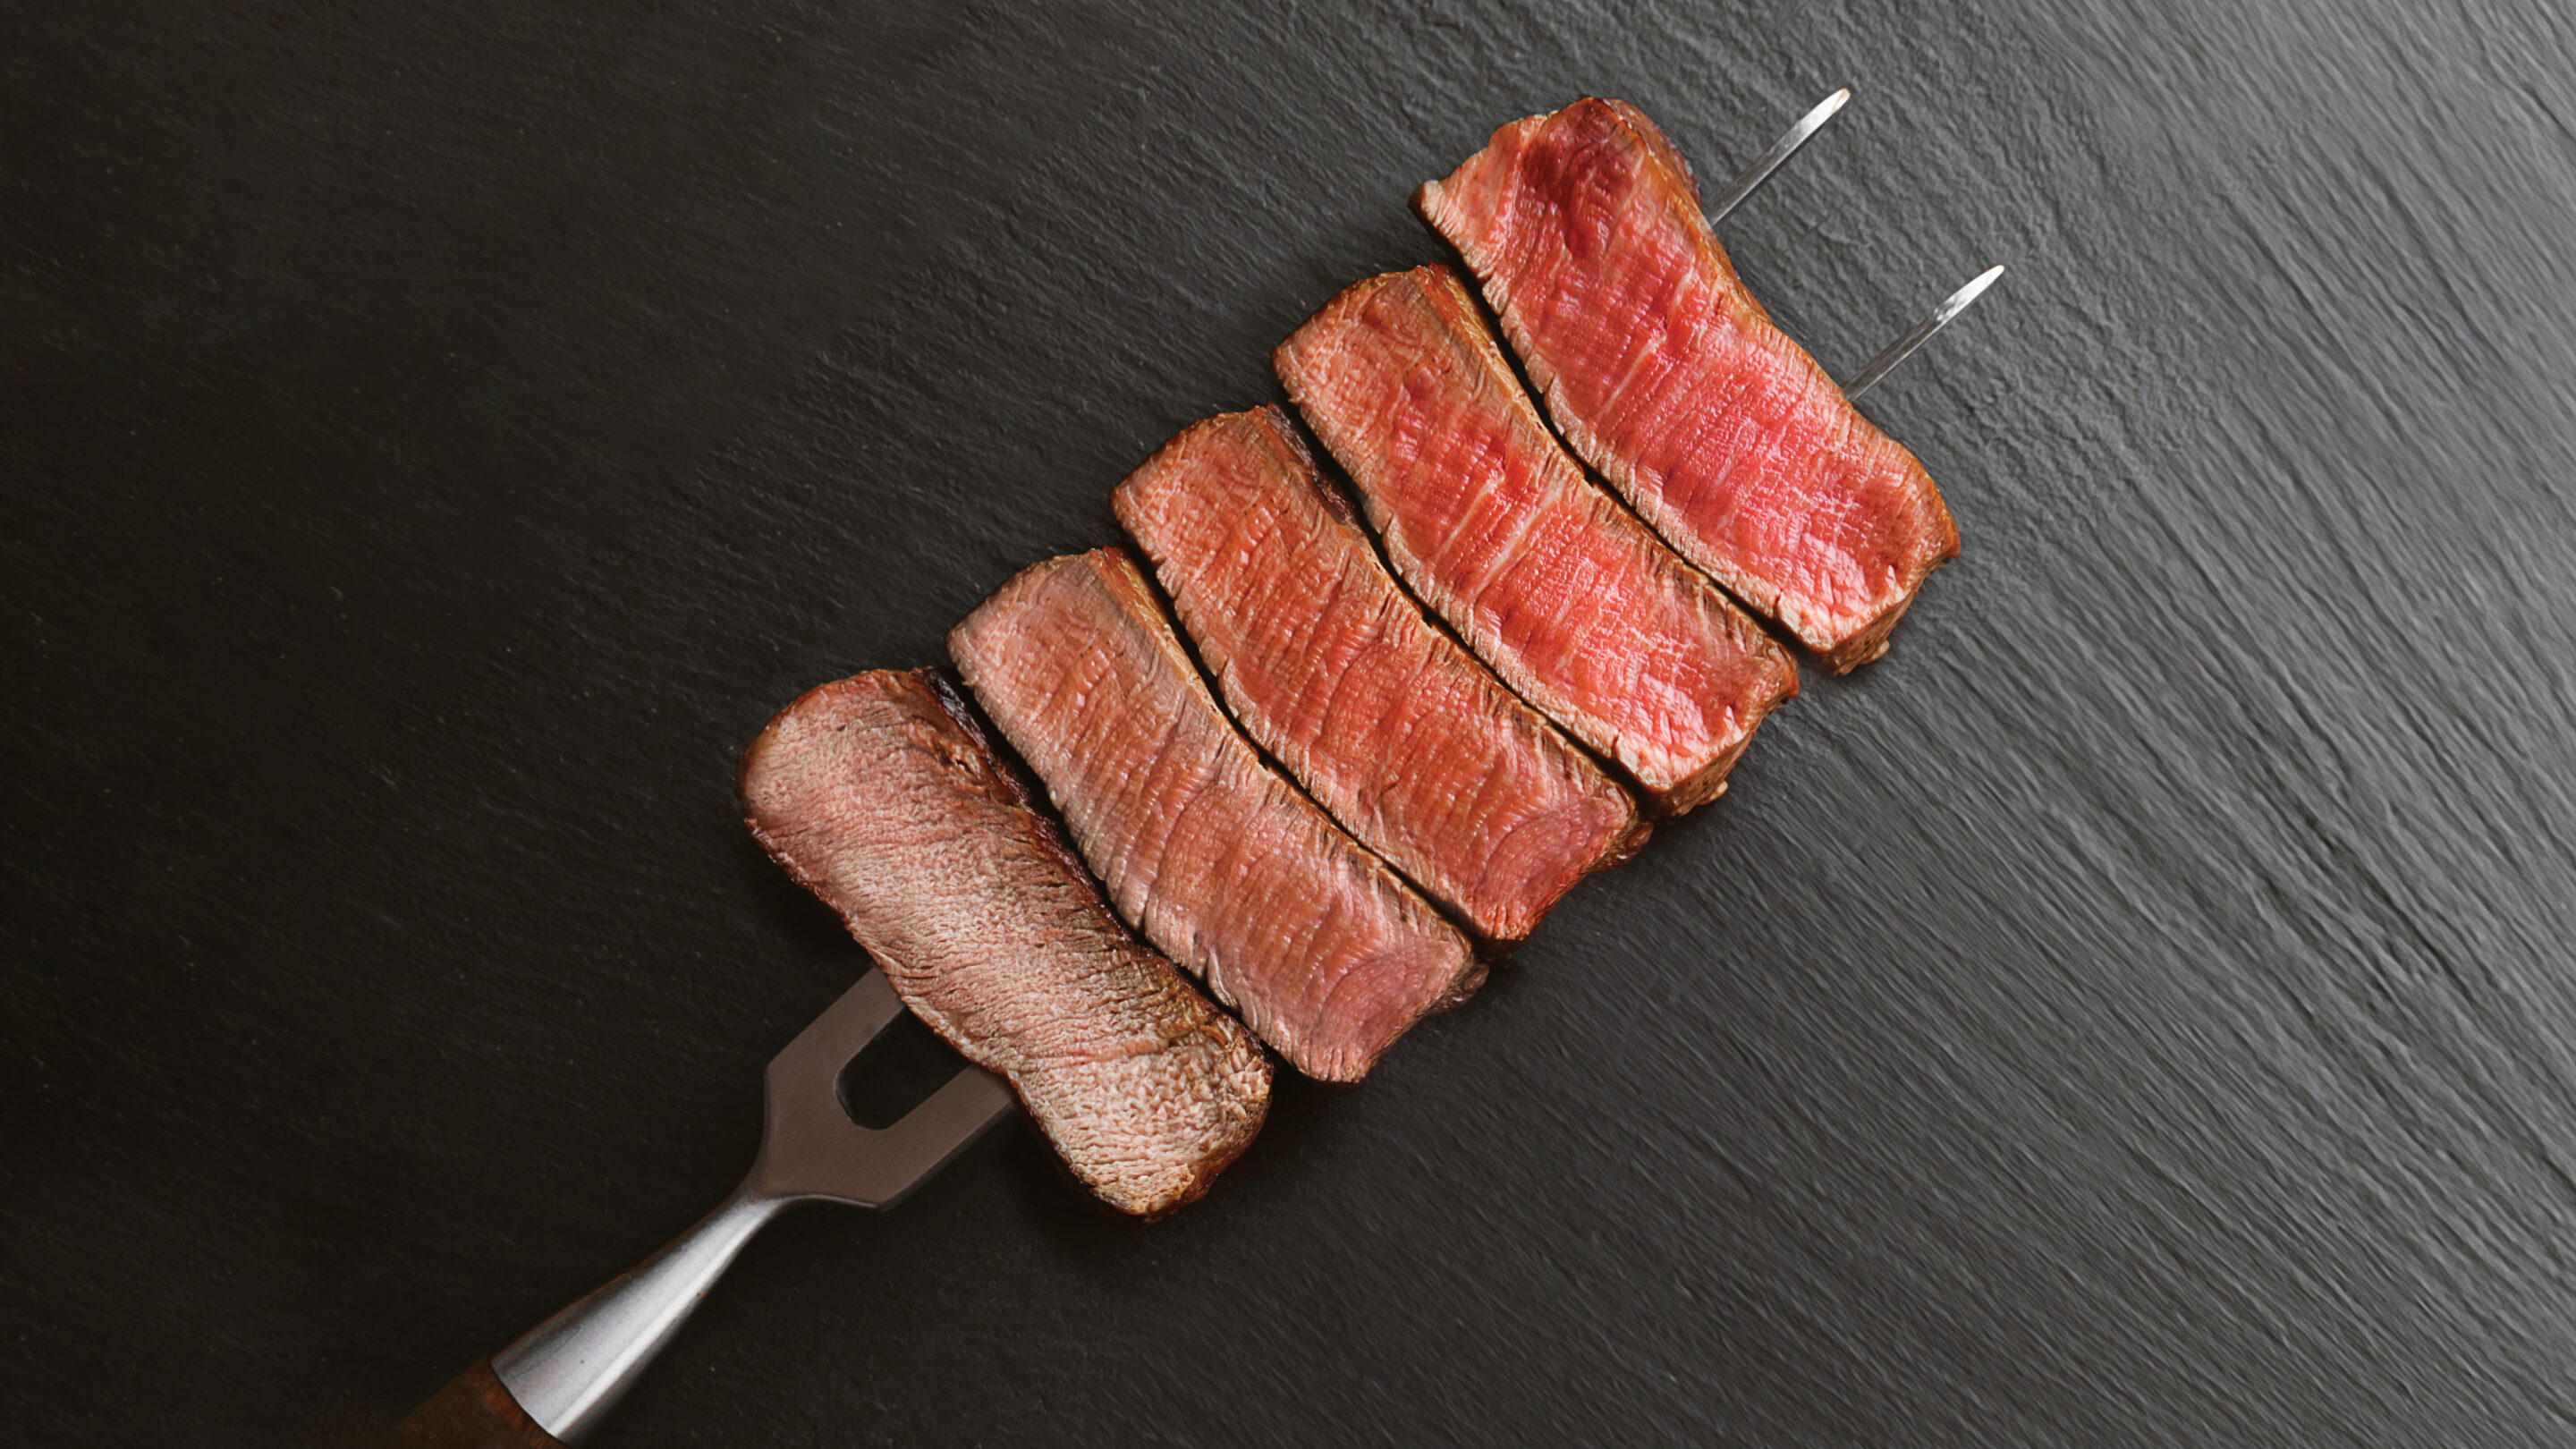 Evolve propel Forlænge Steak Doneness Guide & Temperature Charts | Omaha Steaks